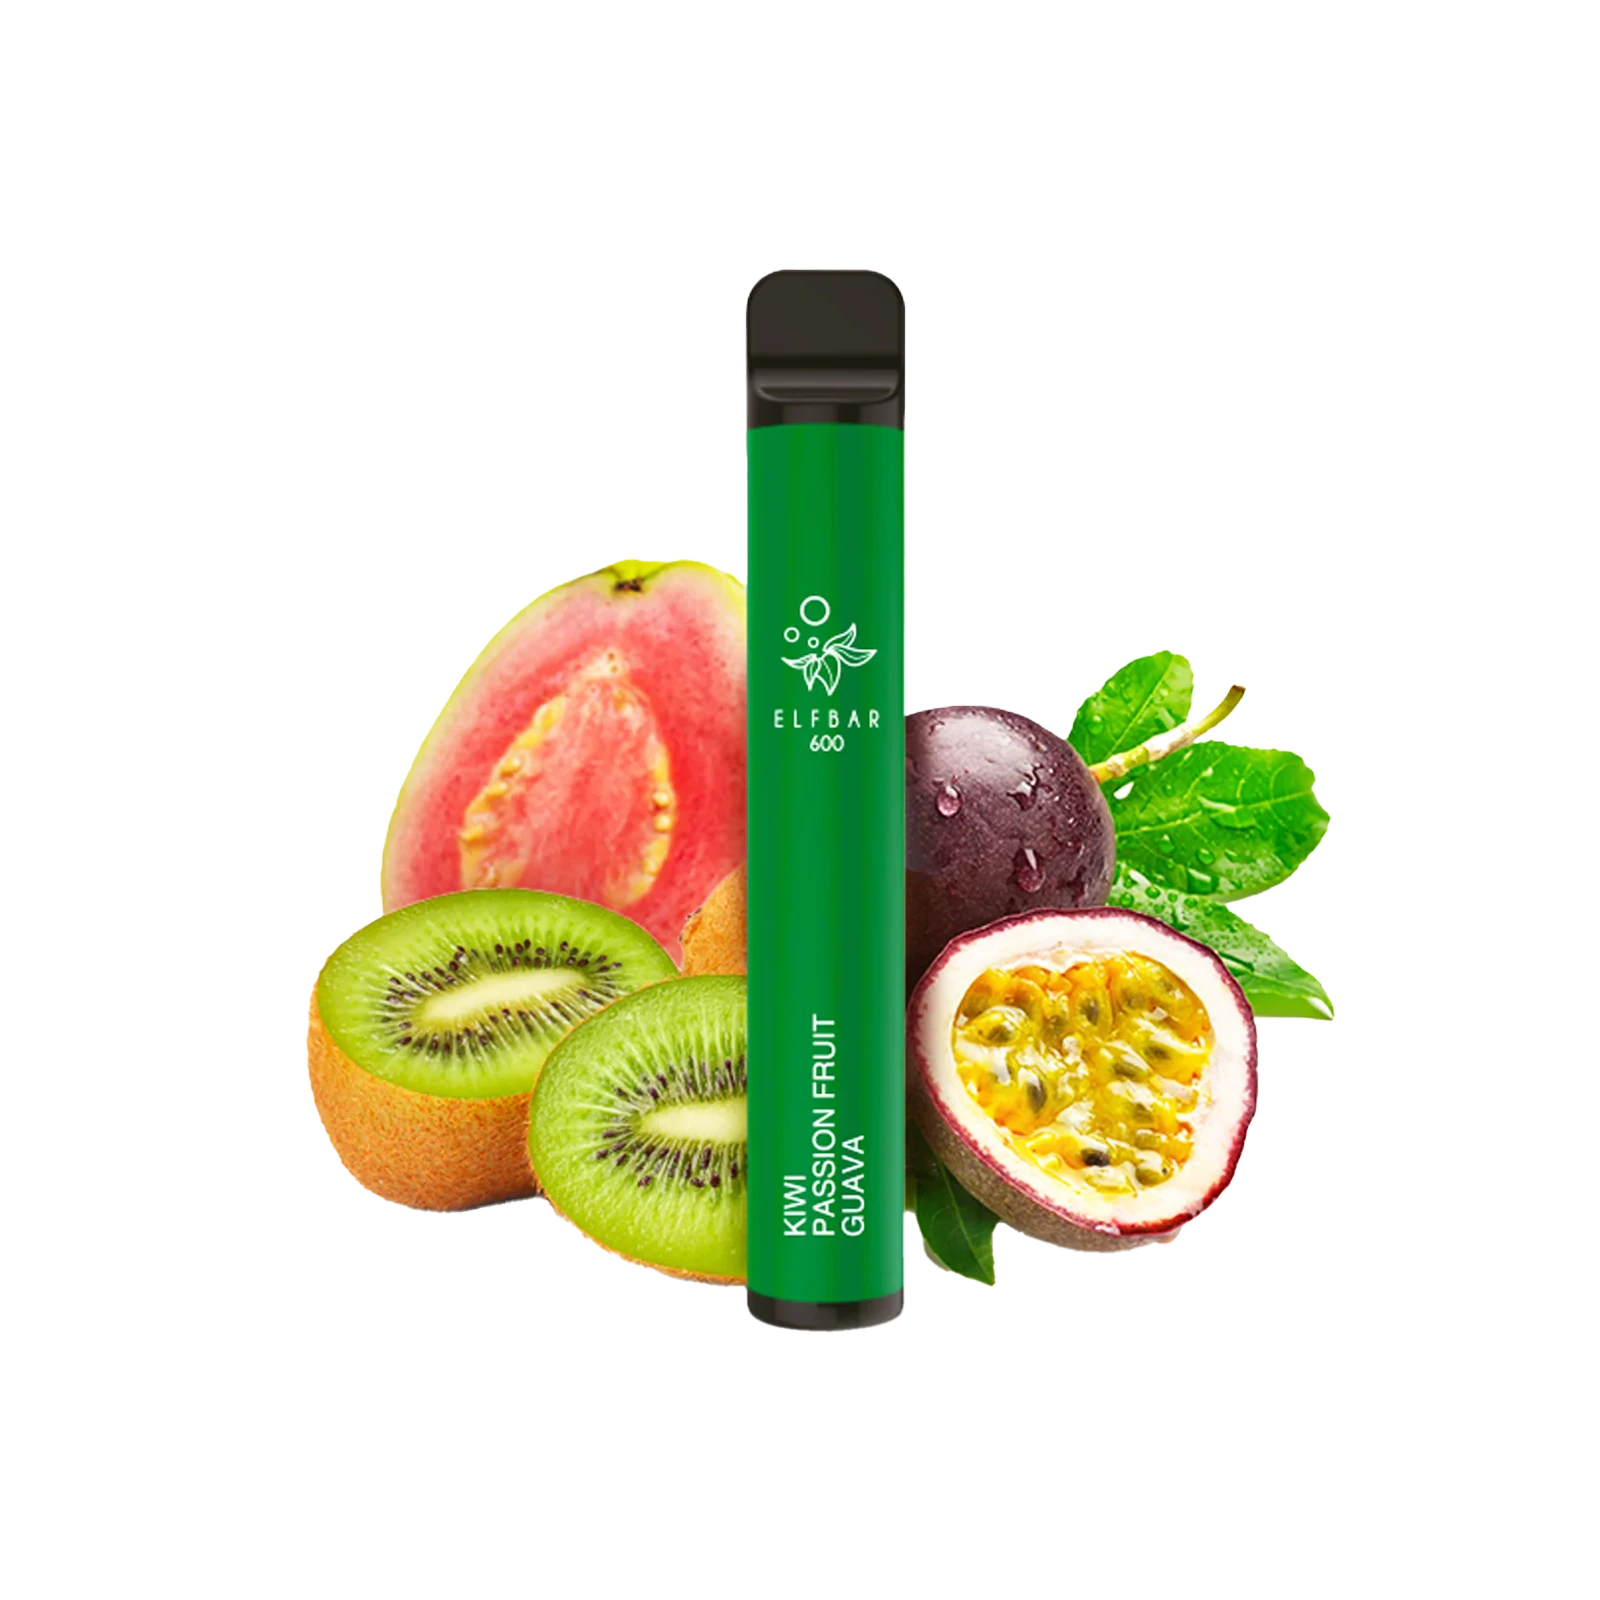 Elf Bar 600 - Kiwi Passionfruit Guave - E-Zigarette - Vape Stick - 20 mg